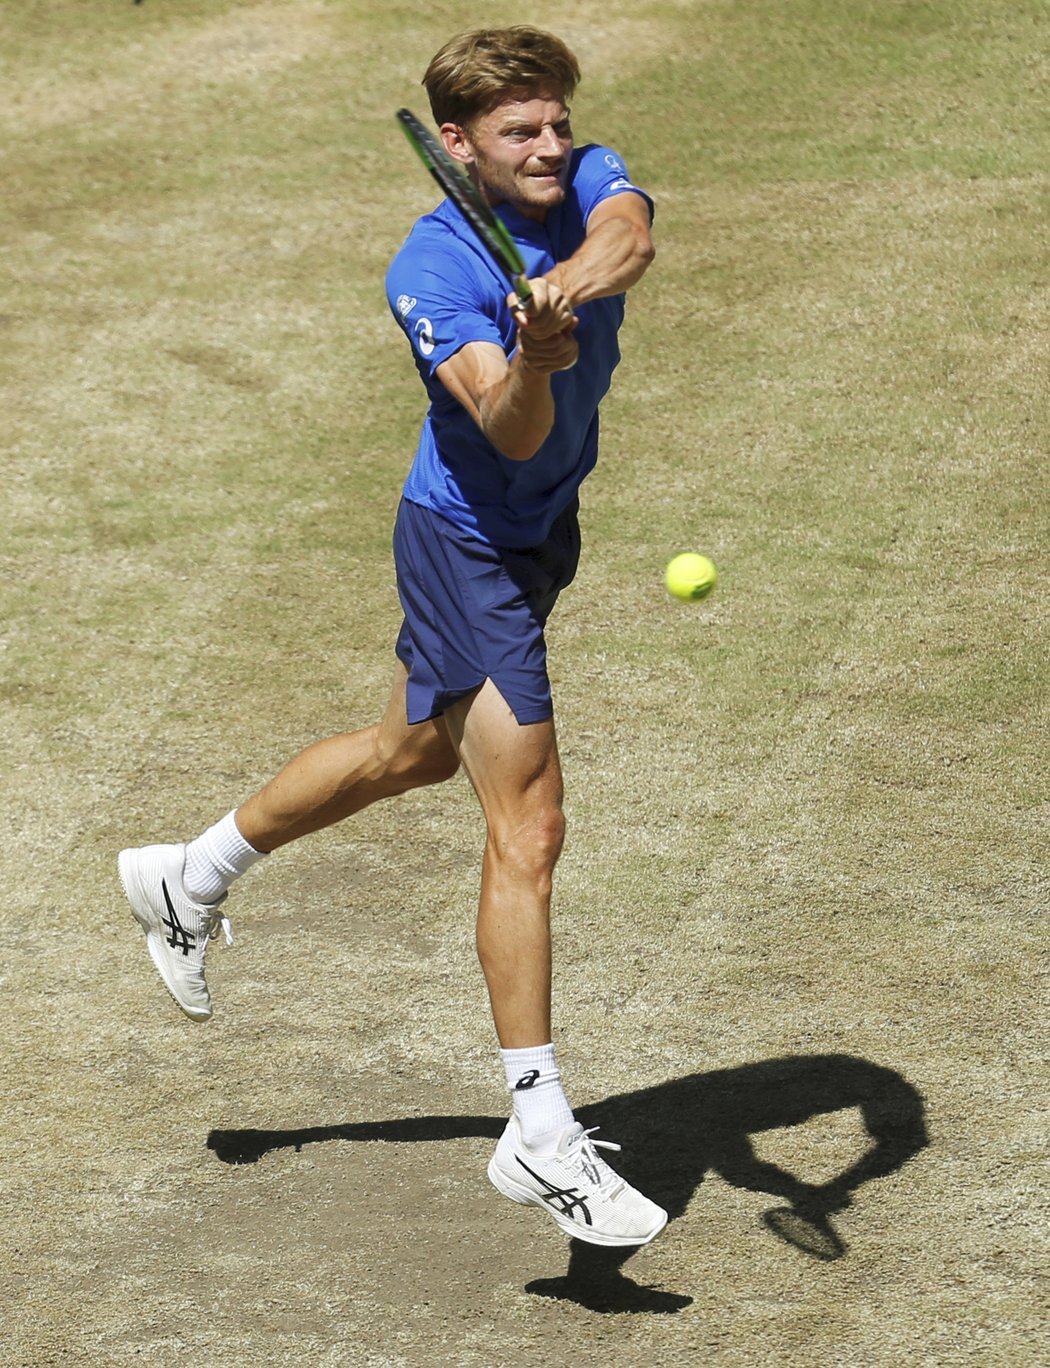 David Goffin na Federera ve finále nestačil